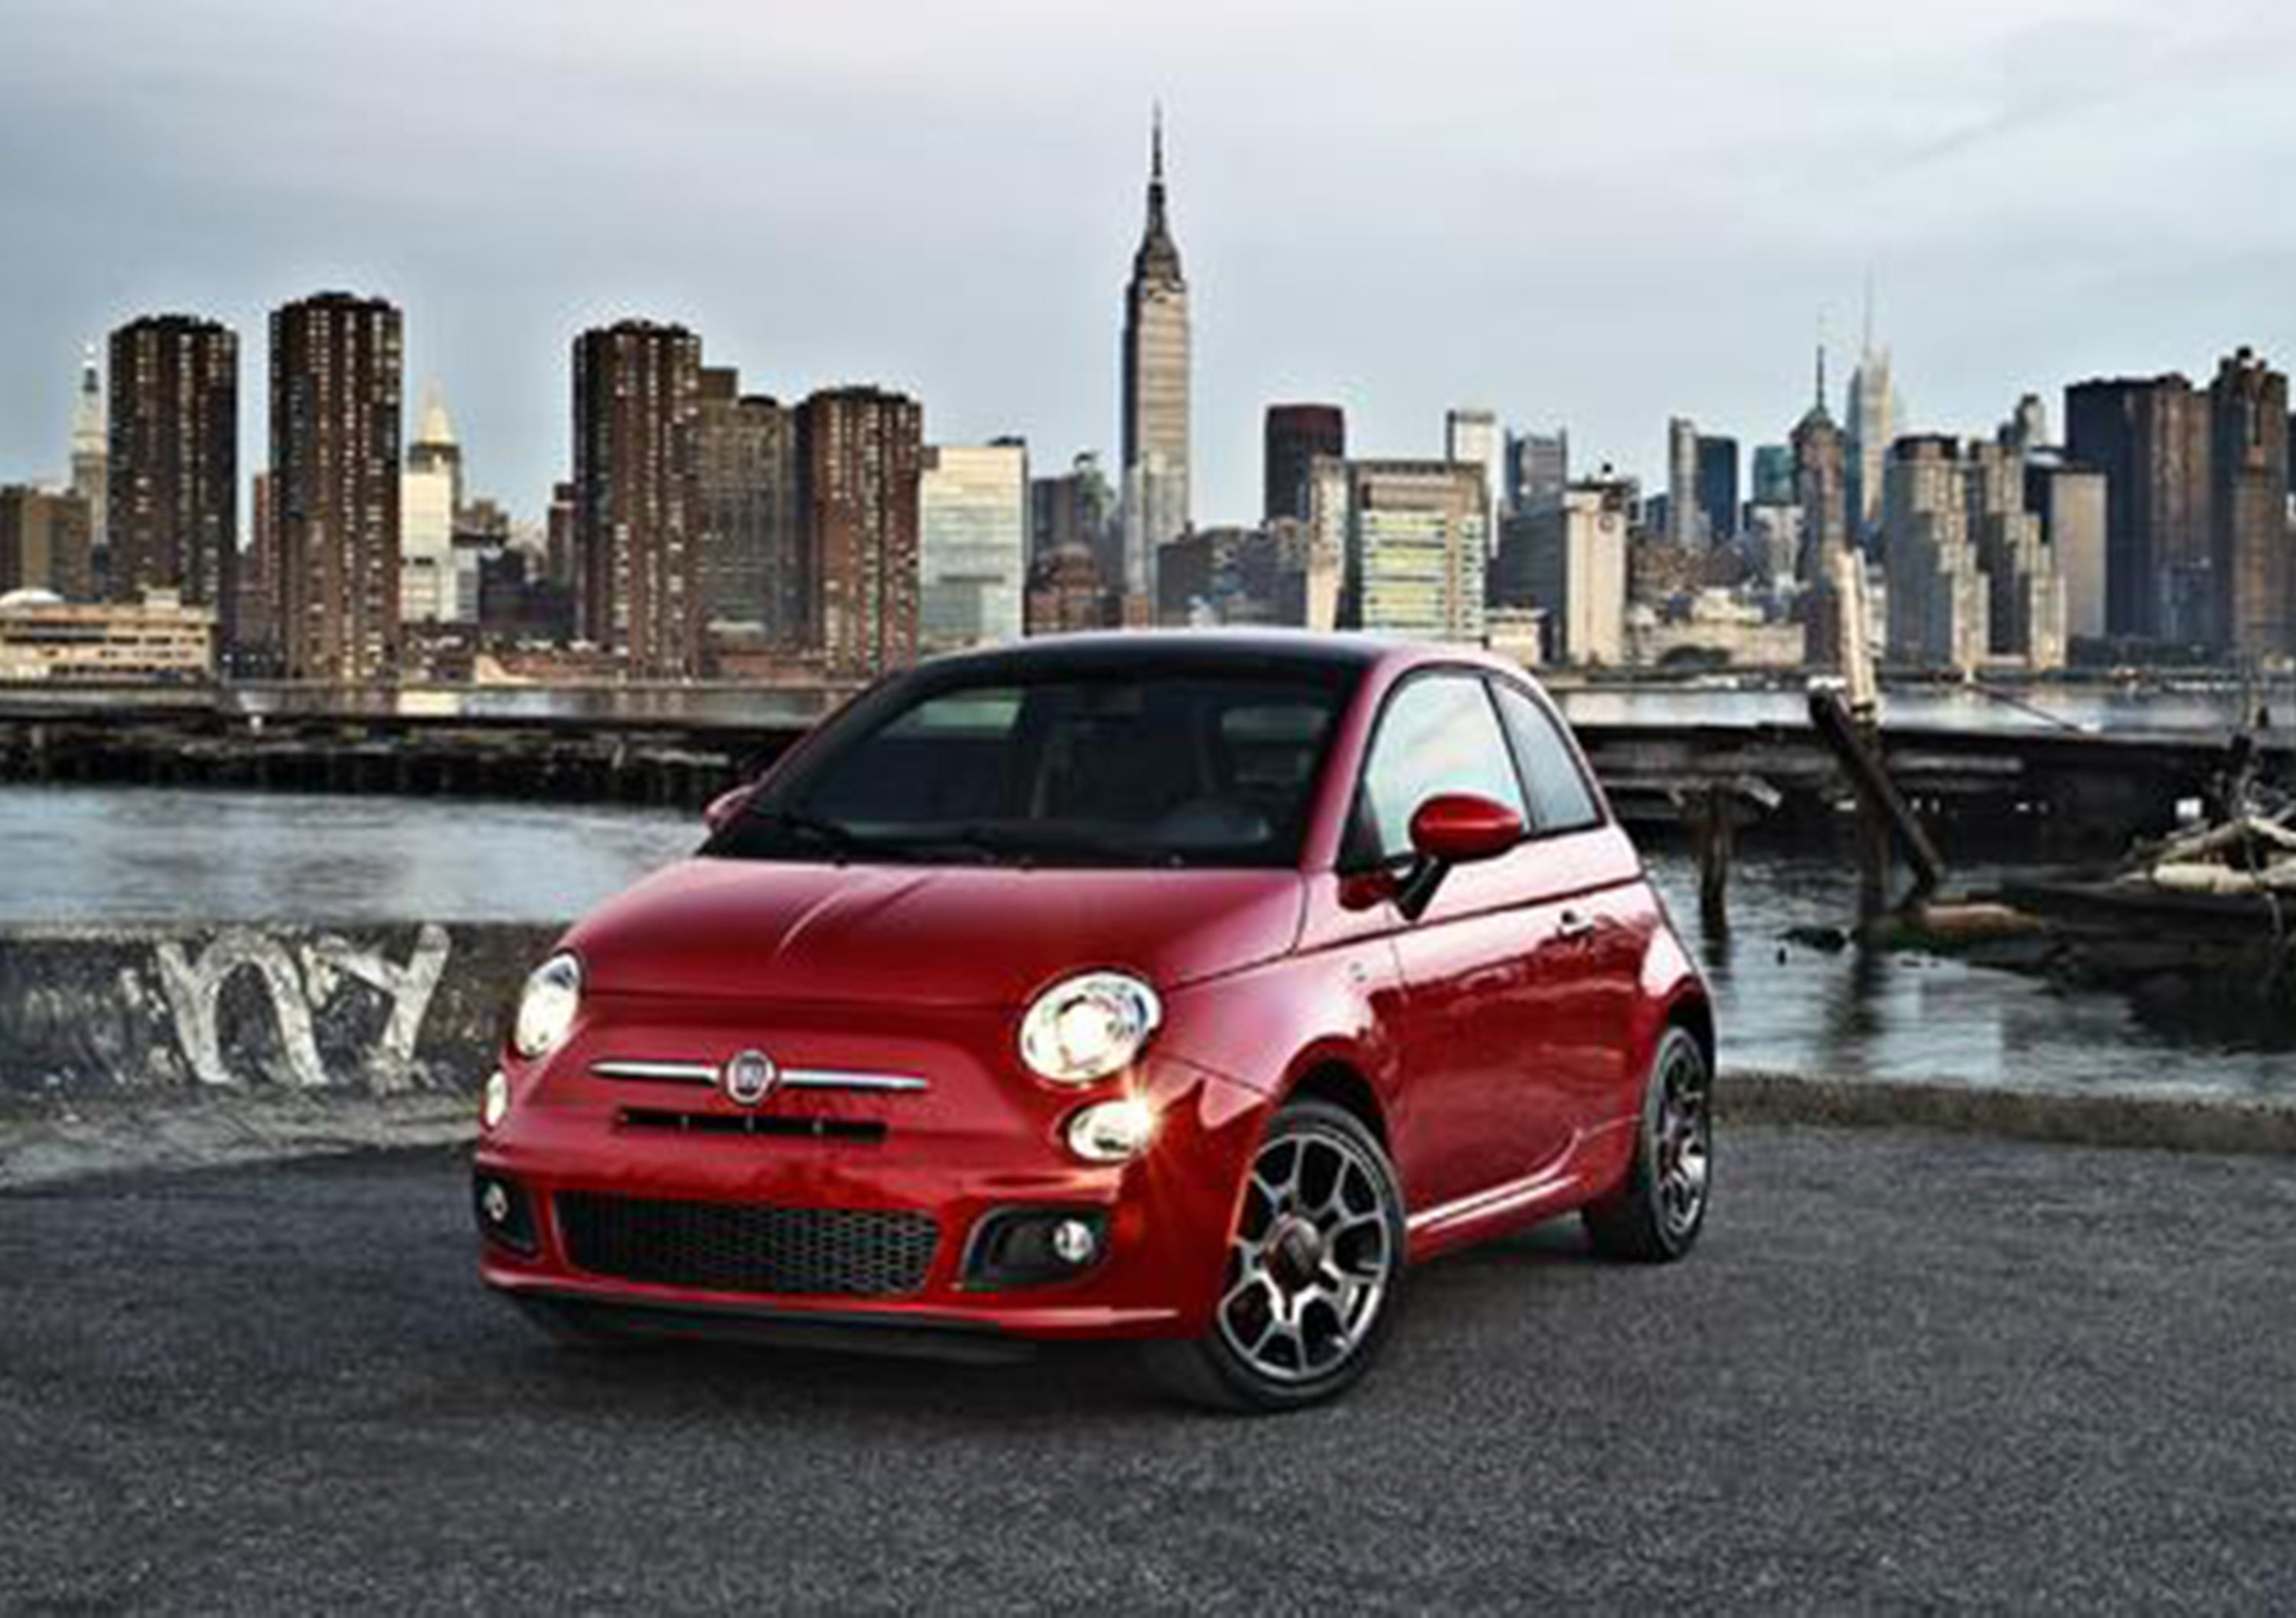 Fiat-Chrysler: le reazioni di politica e mercato alla fusione